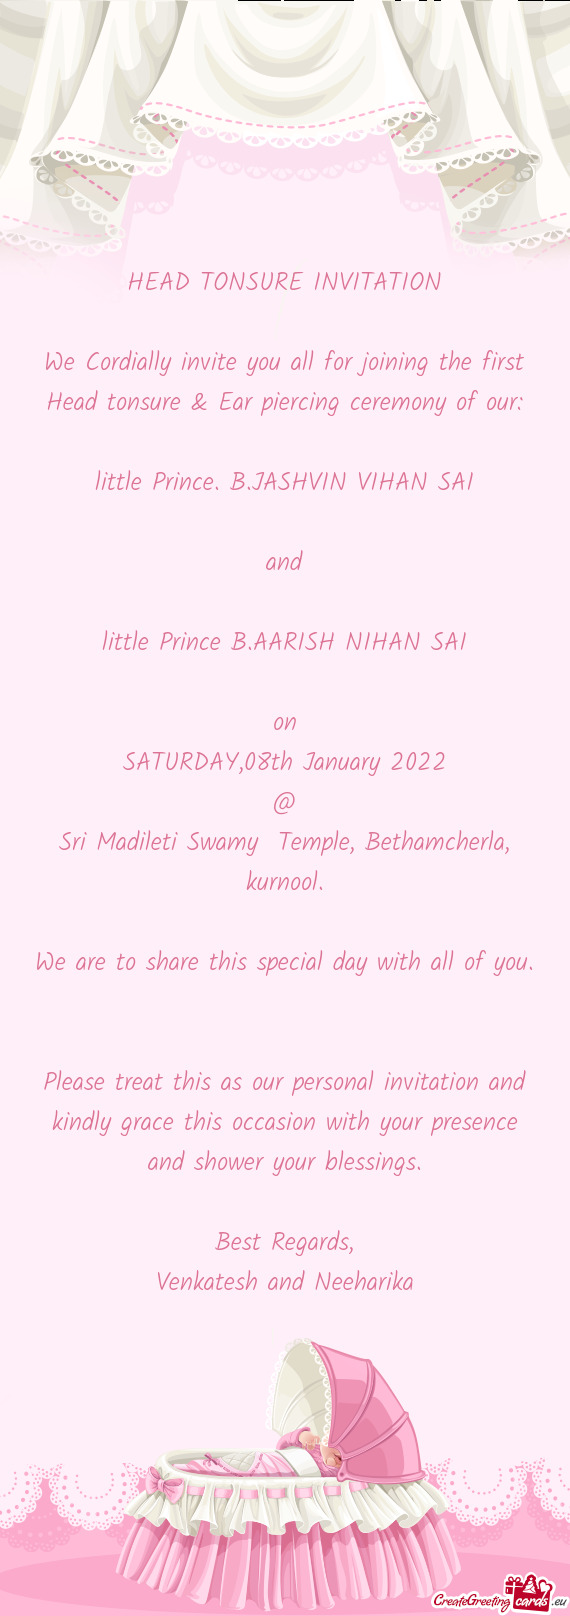 Little Prince B.AARISH NIHAN SAI